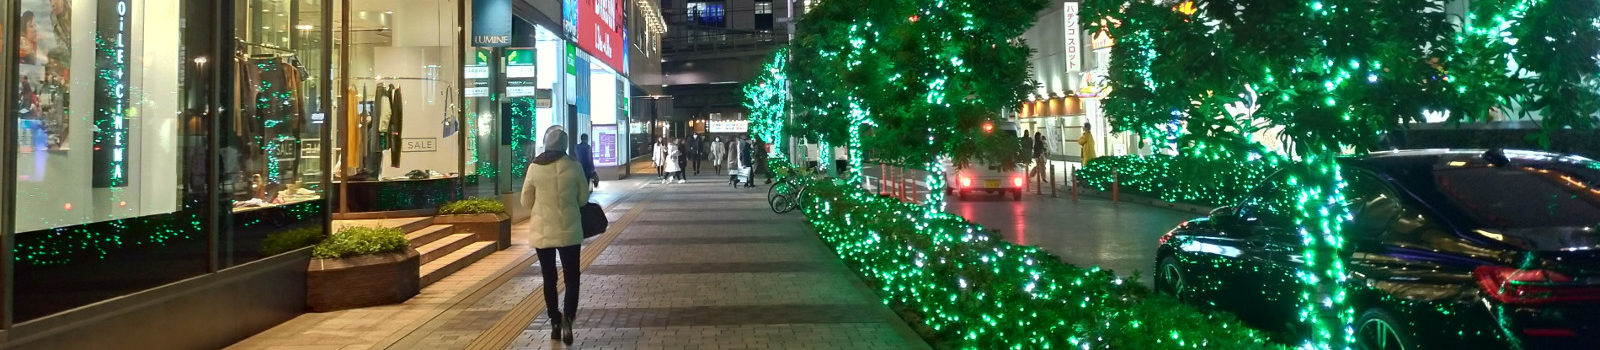 Pachinko_machine_Tokyo_screen_blurred